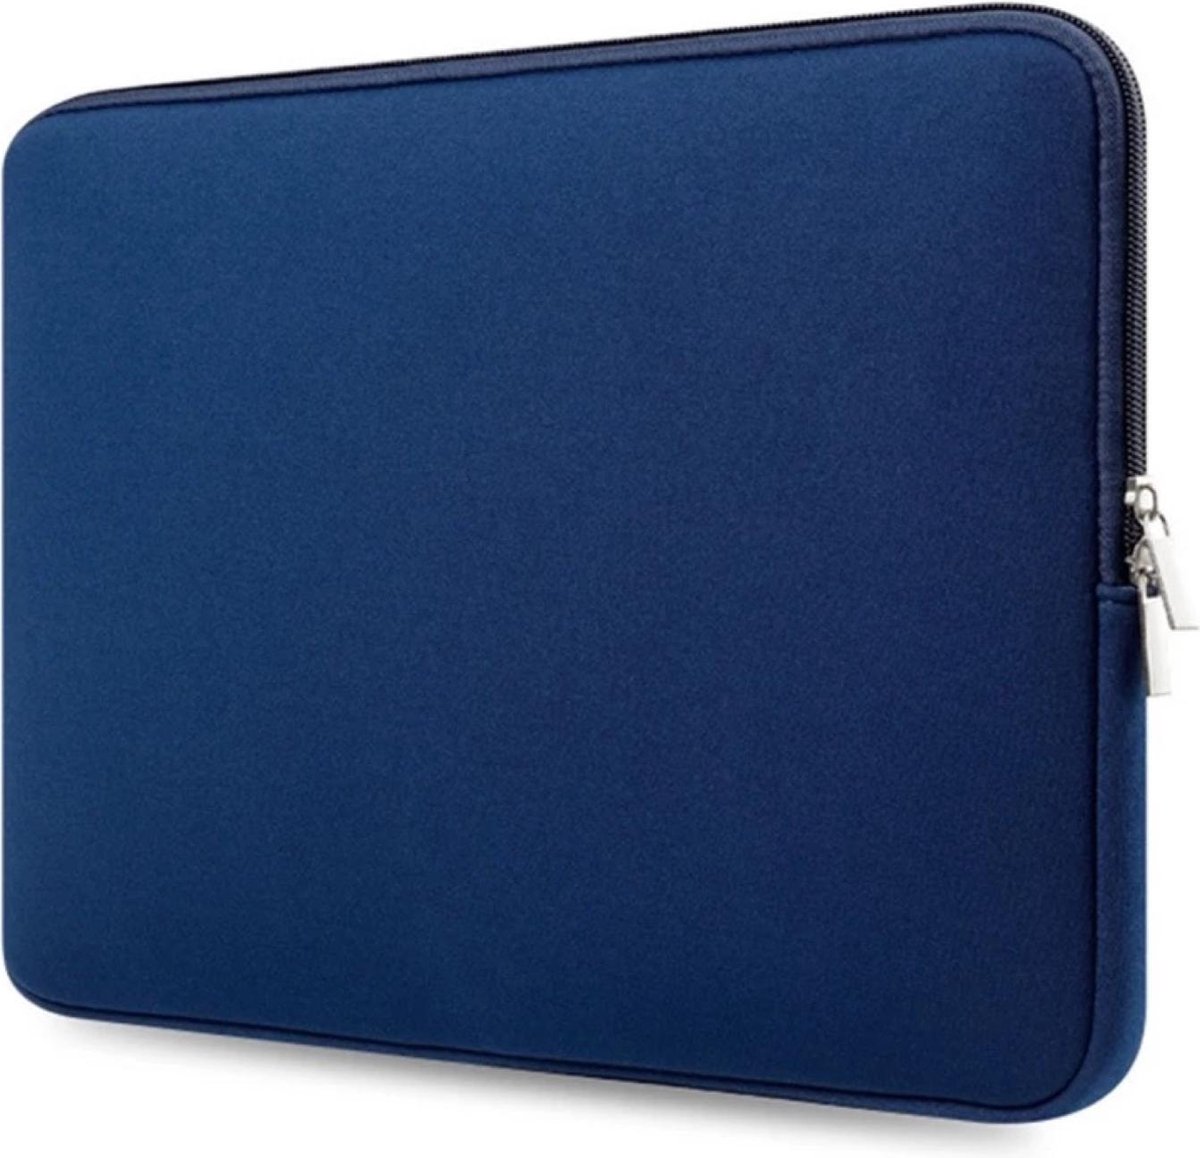 Laptop Sleeve voor Dell Latidude - laptop hoes - sleeve - Met Ritssluiting - spatwaterbestendig - extra bescherming - 14,6 inch ( Blauw )